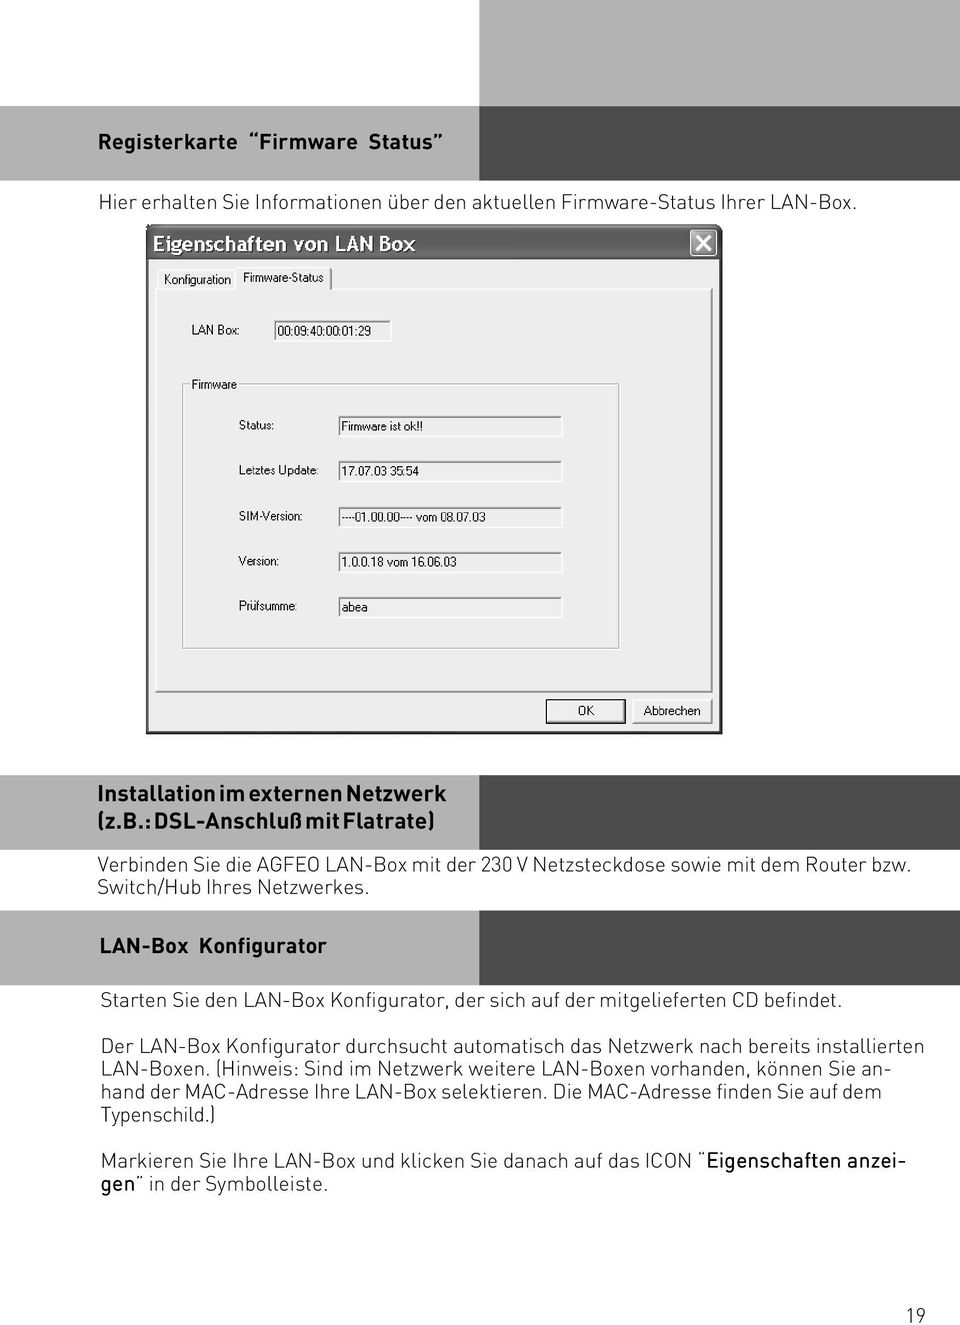 Der LAN-Box Konfigurator durchsucht automatisch das Netzwerk nach bereits installierten LAN-Boxen.